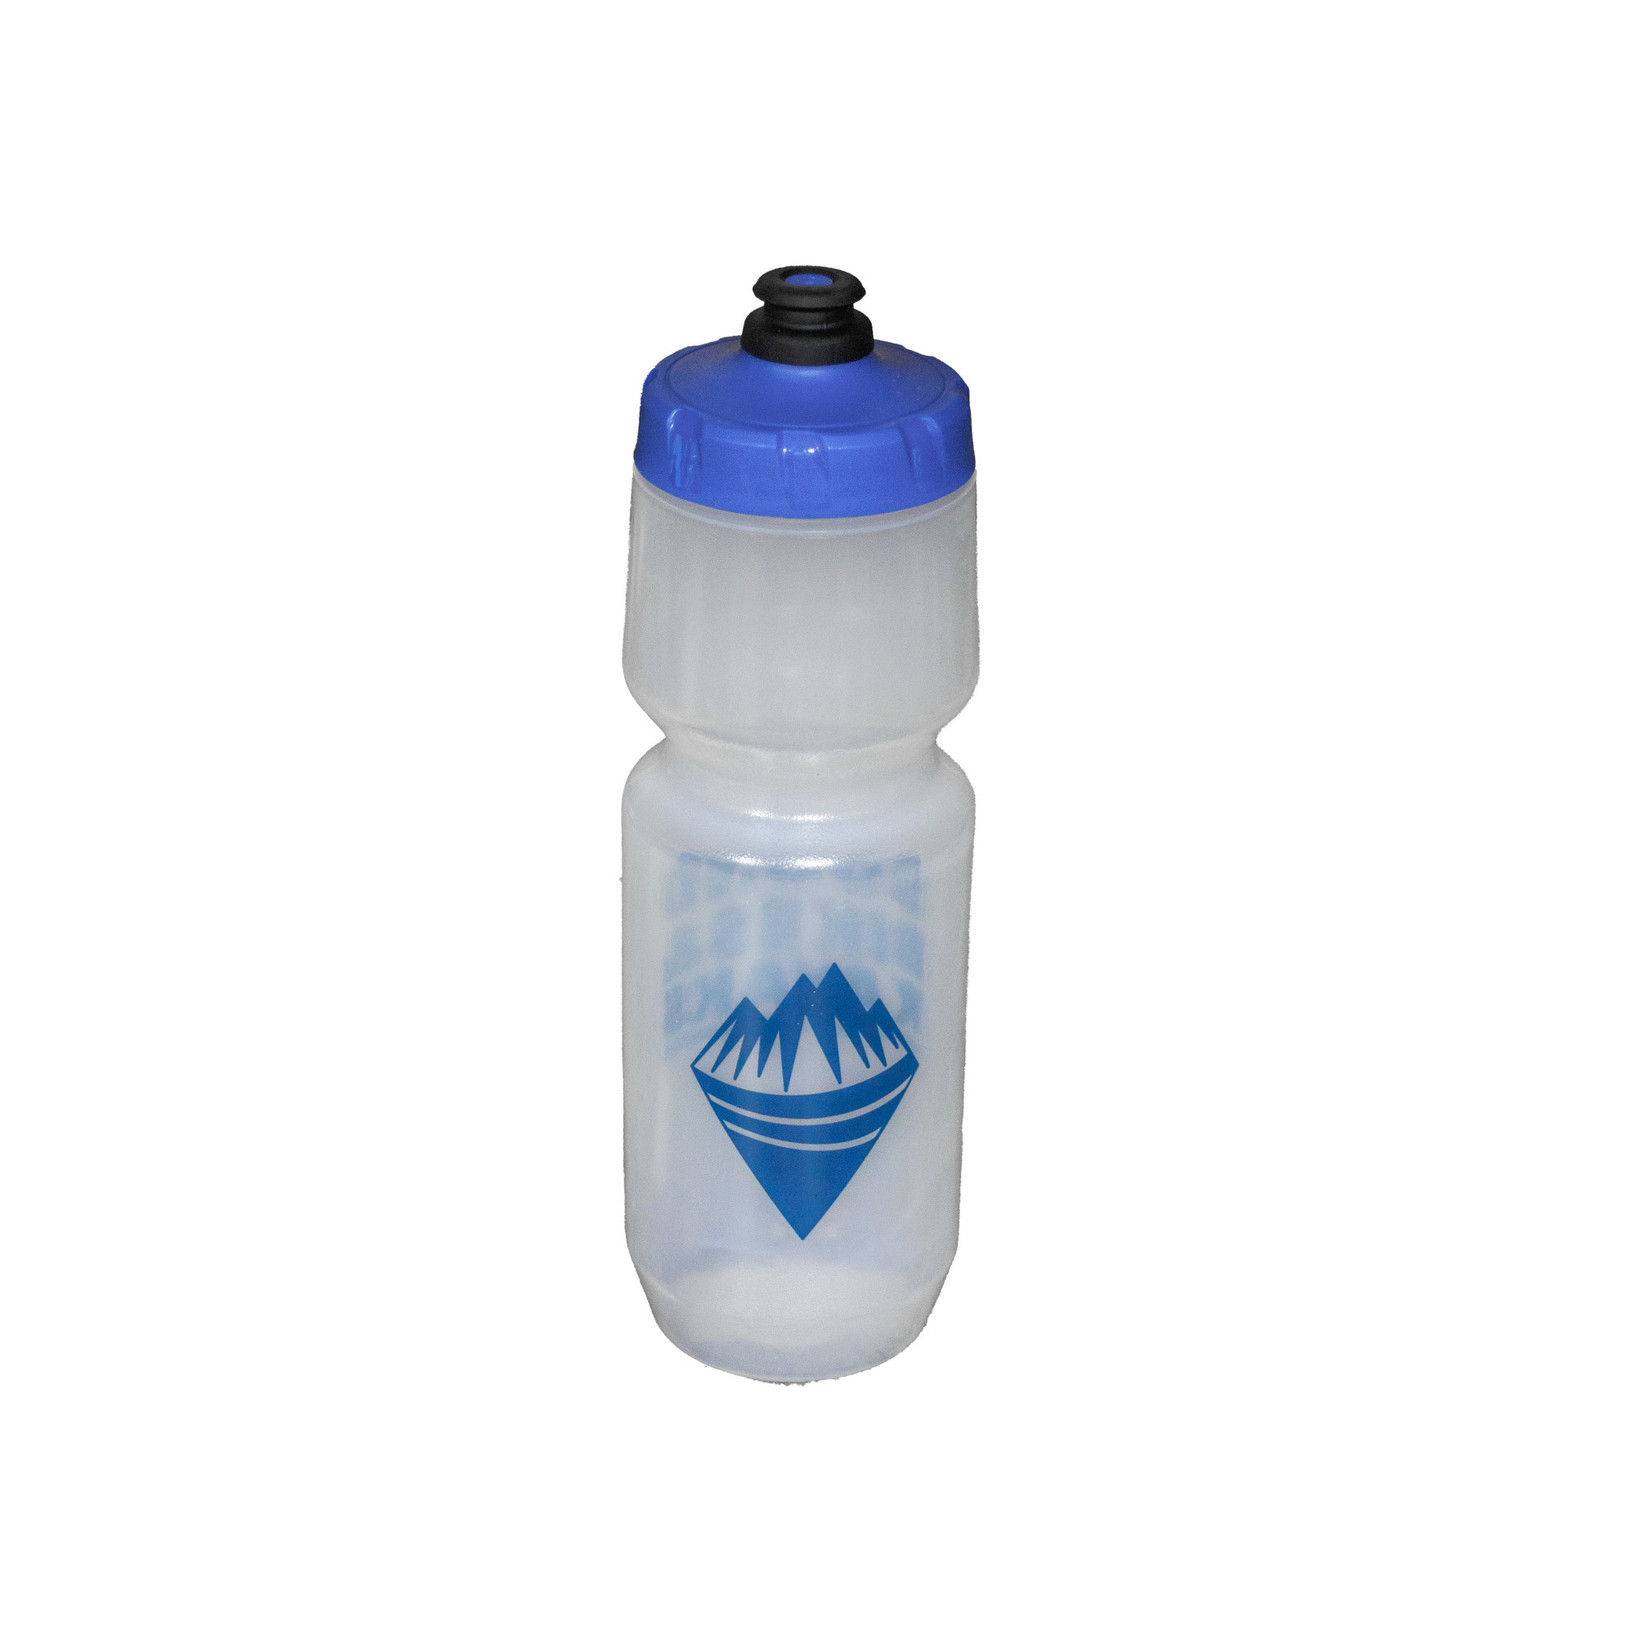 Specialized SBK Water Bottle